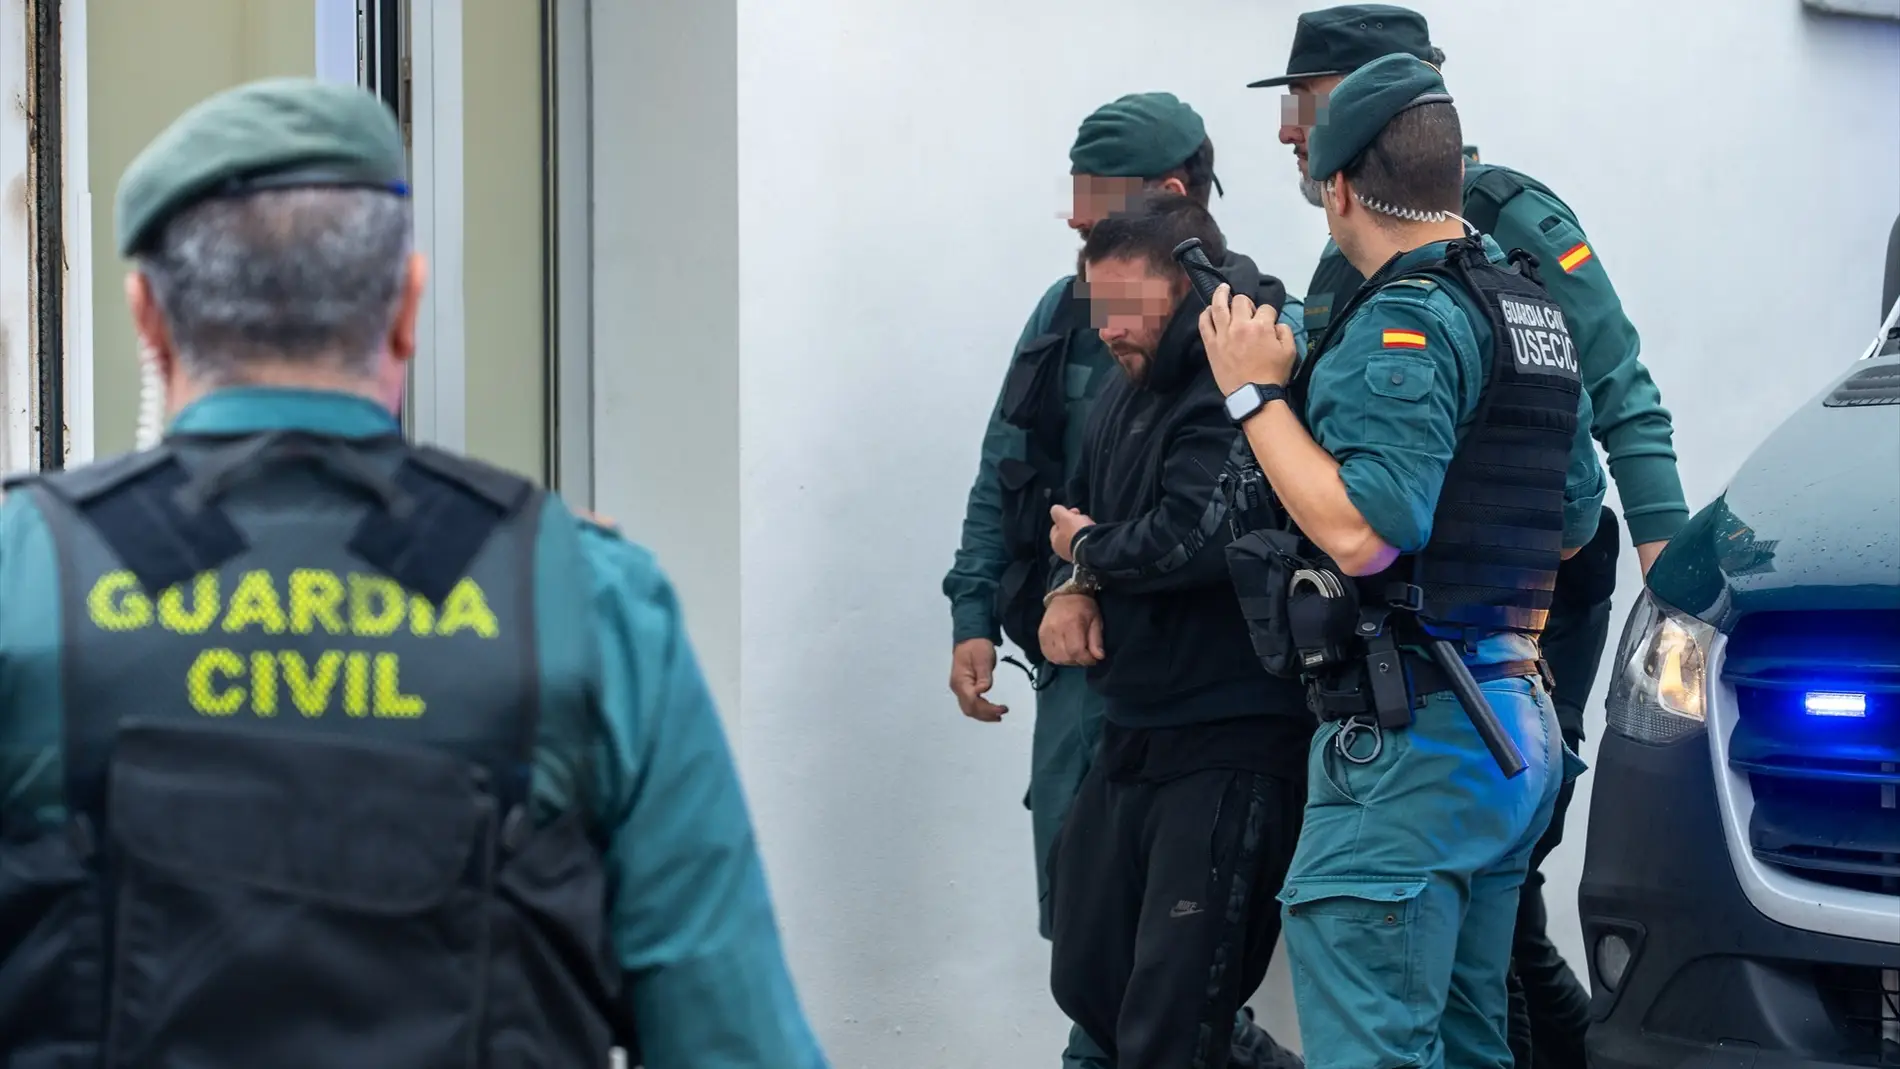 Los detenidos llegan a los juzgados, a 12 de febrero de 2023, en Barbate, Cádiz/ Francisco J. Olmo / Europa Press